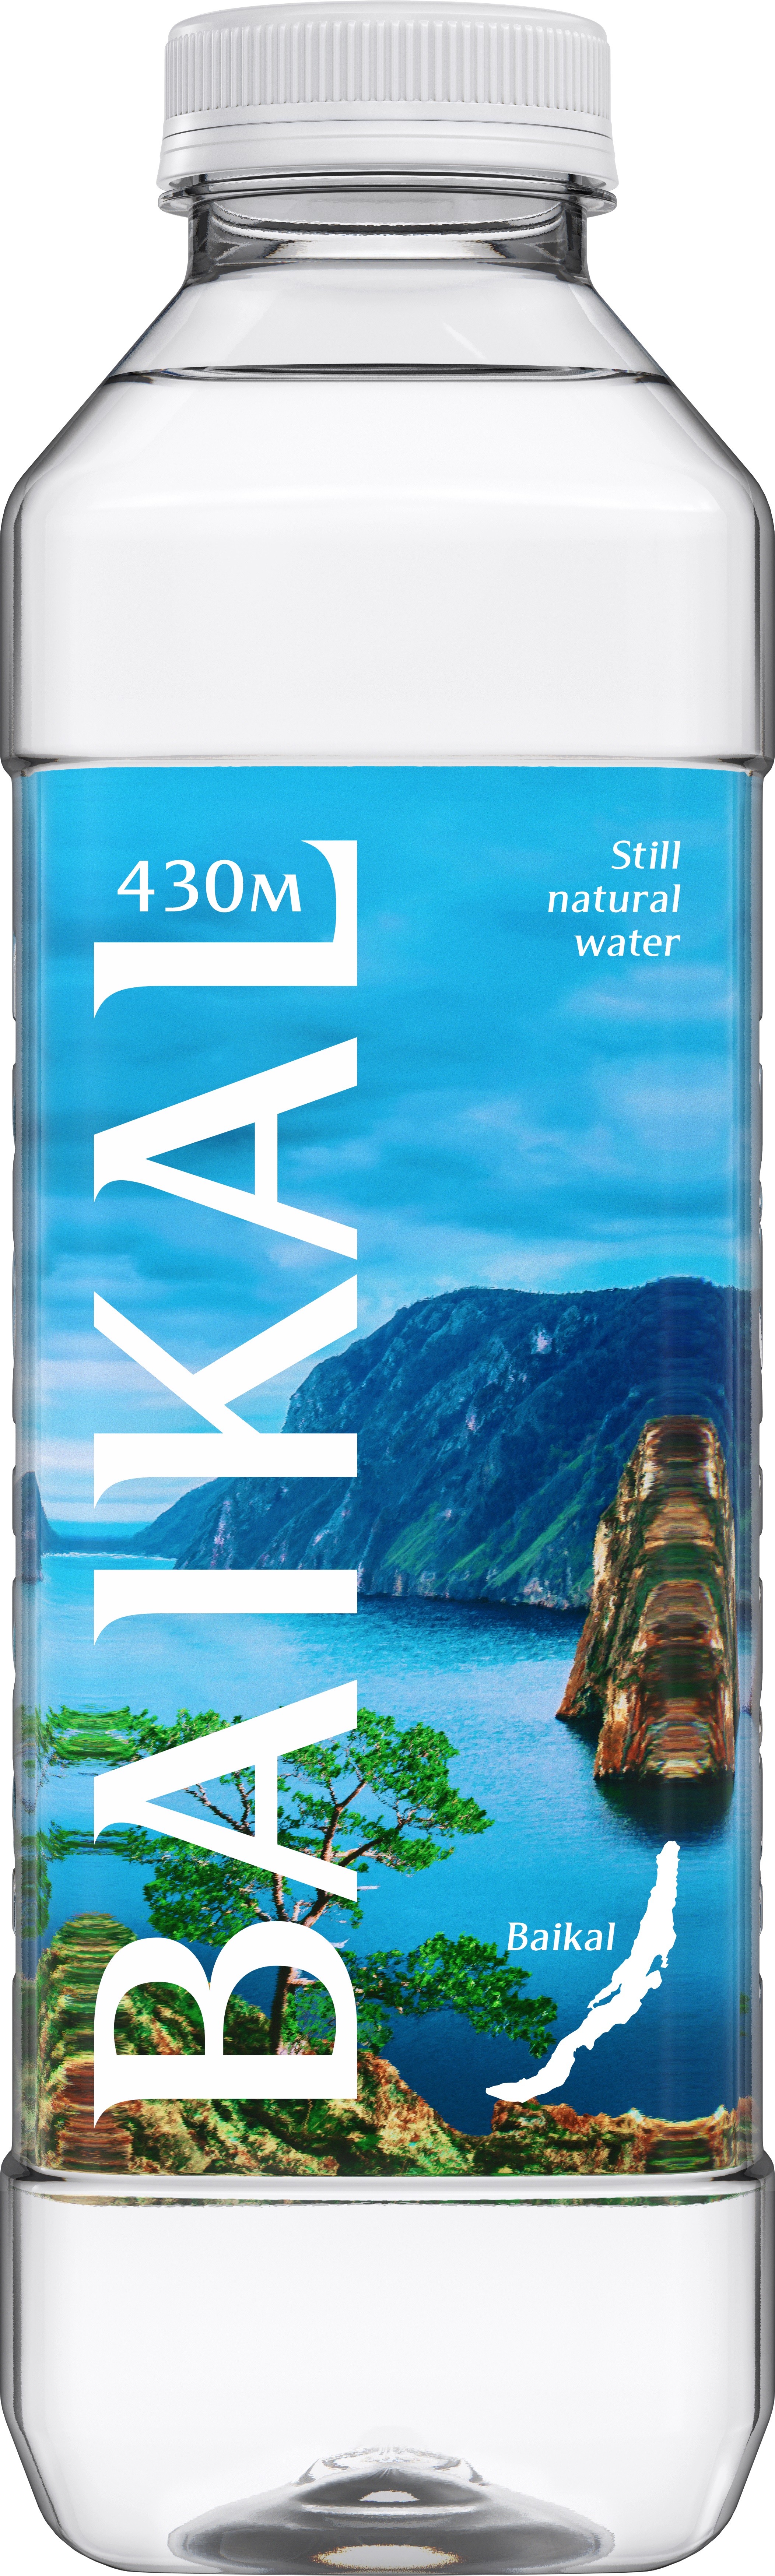 Вода Baikal 430м 850мл